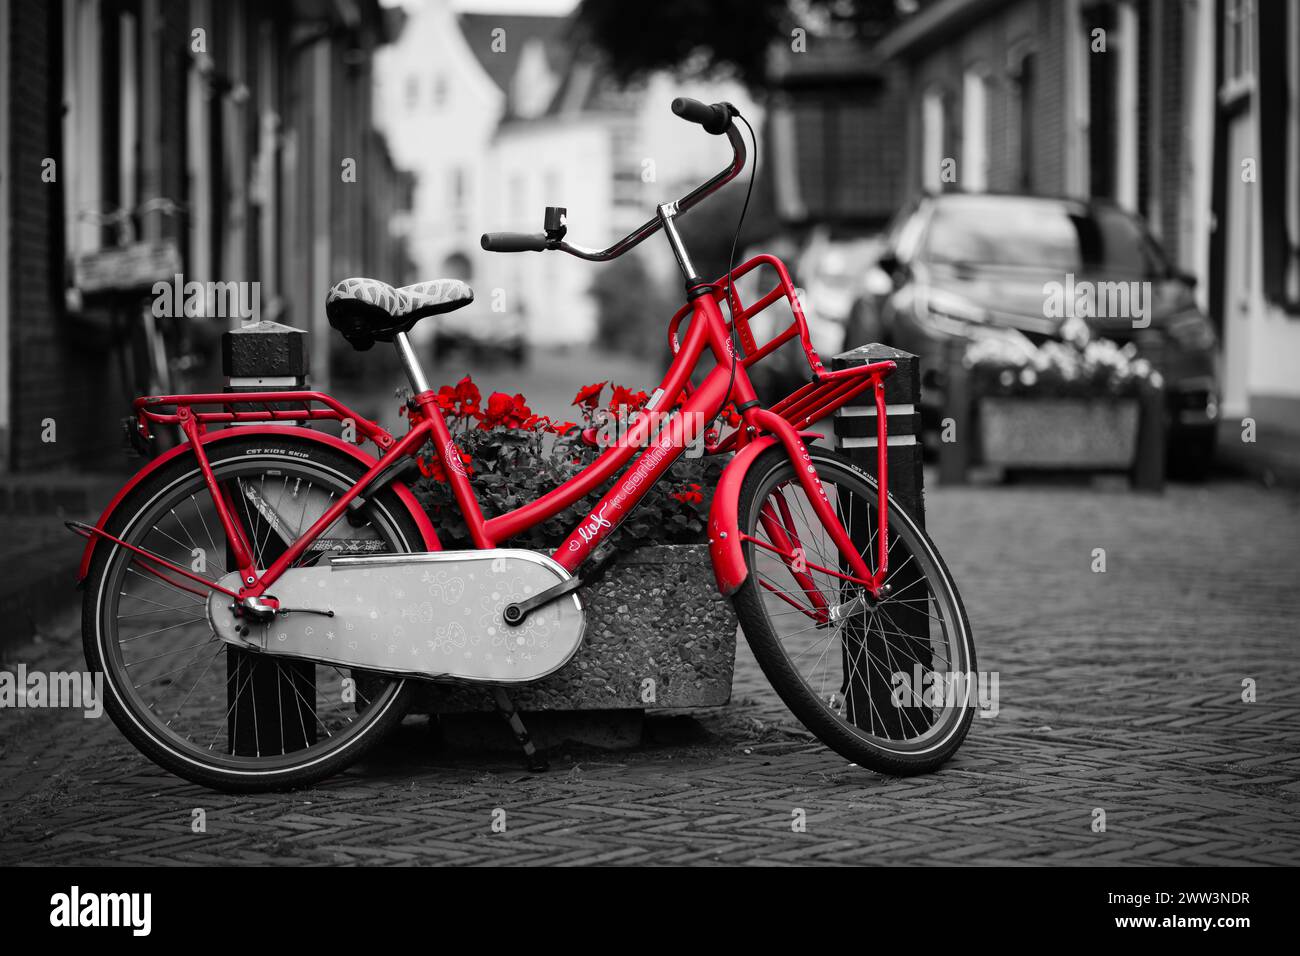 Fotografia a colori selettiva di una bicicletta rossa con un cestino di fiori su una vecchia strada acciottolata Foto Stock